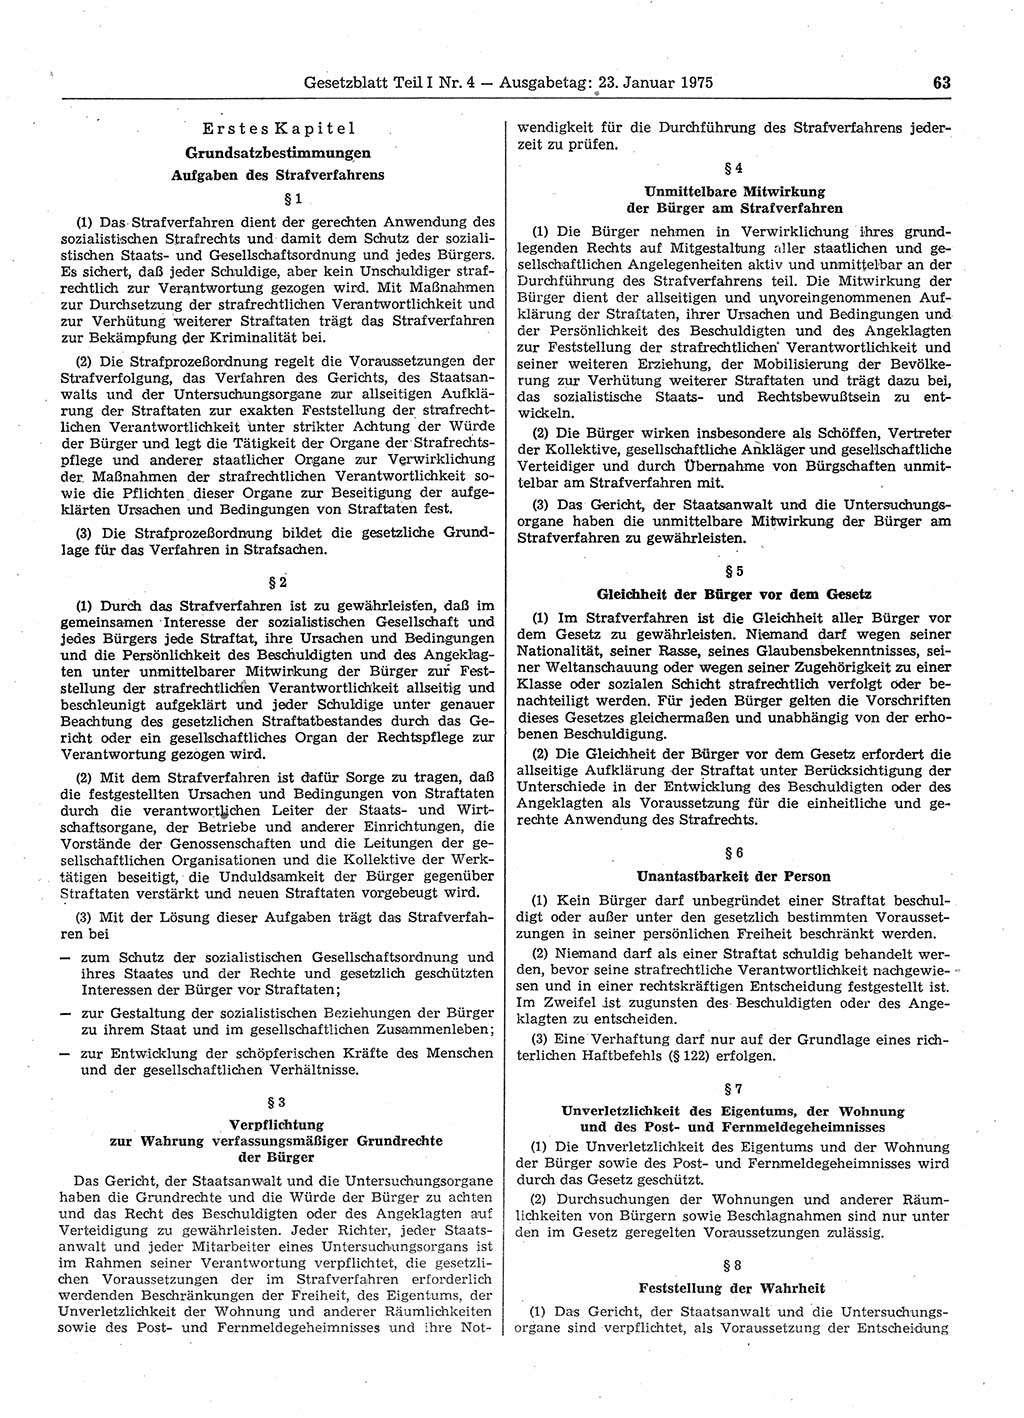 Gesetzblatt (GBl.) der Deutschen Demokratischen Republik (DDR) Teil Ⅰ 1975, Seite 63 (GBl. DDR Ⅰ 1975, S. 63)